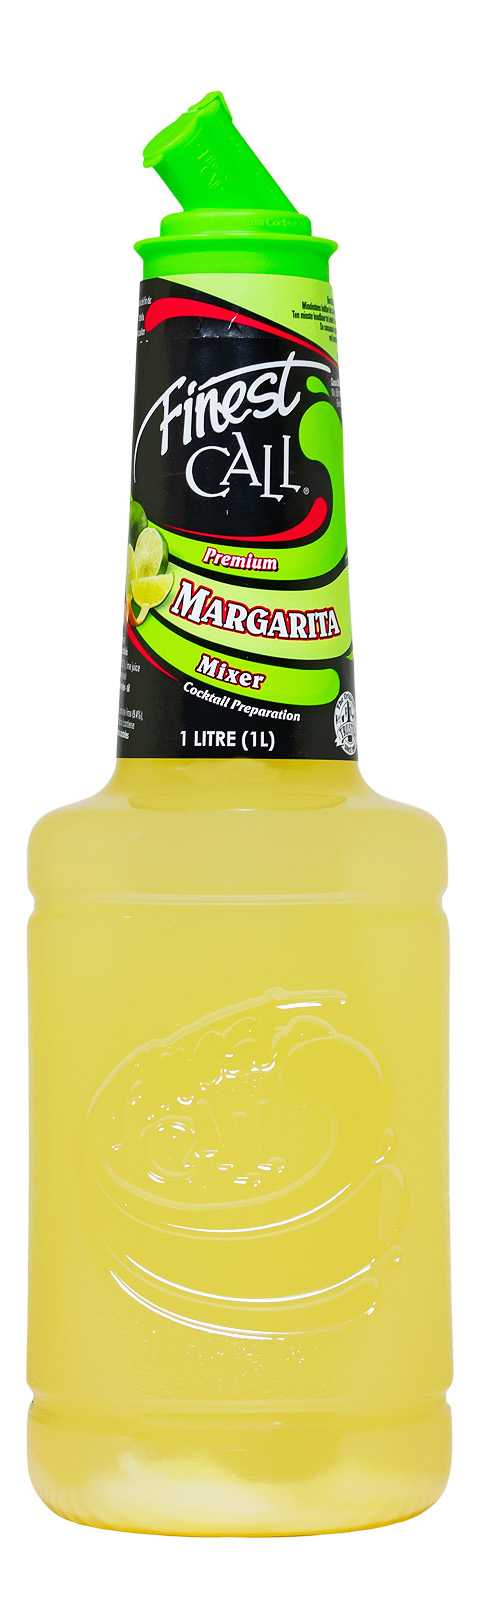 Finest Call Margarita Mix - 1 Liter